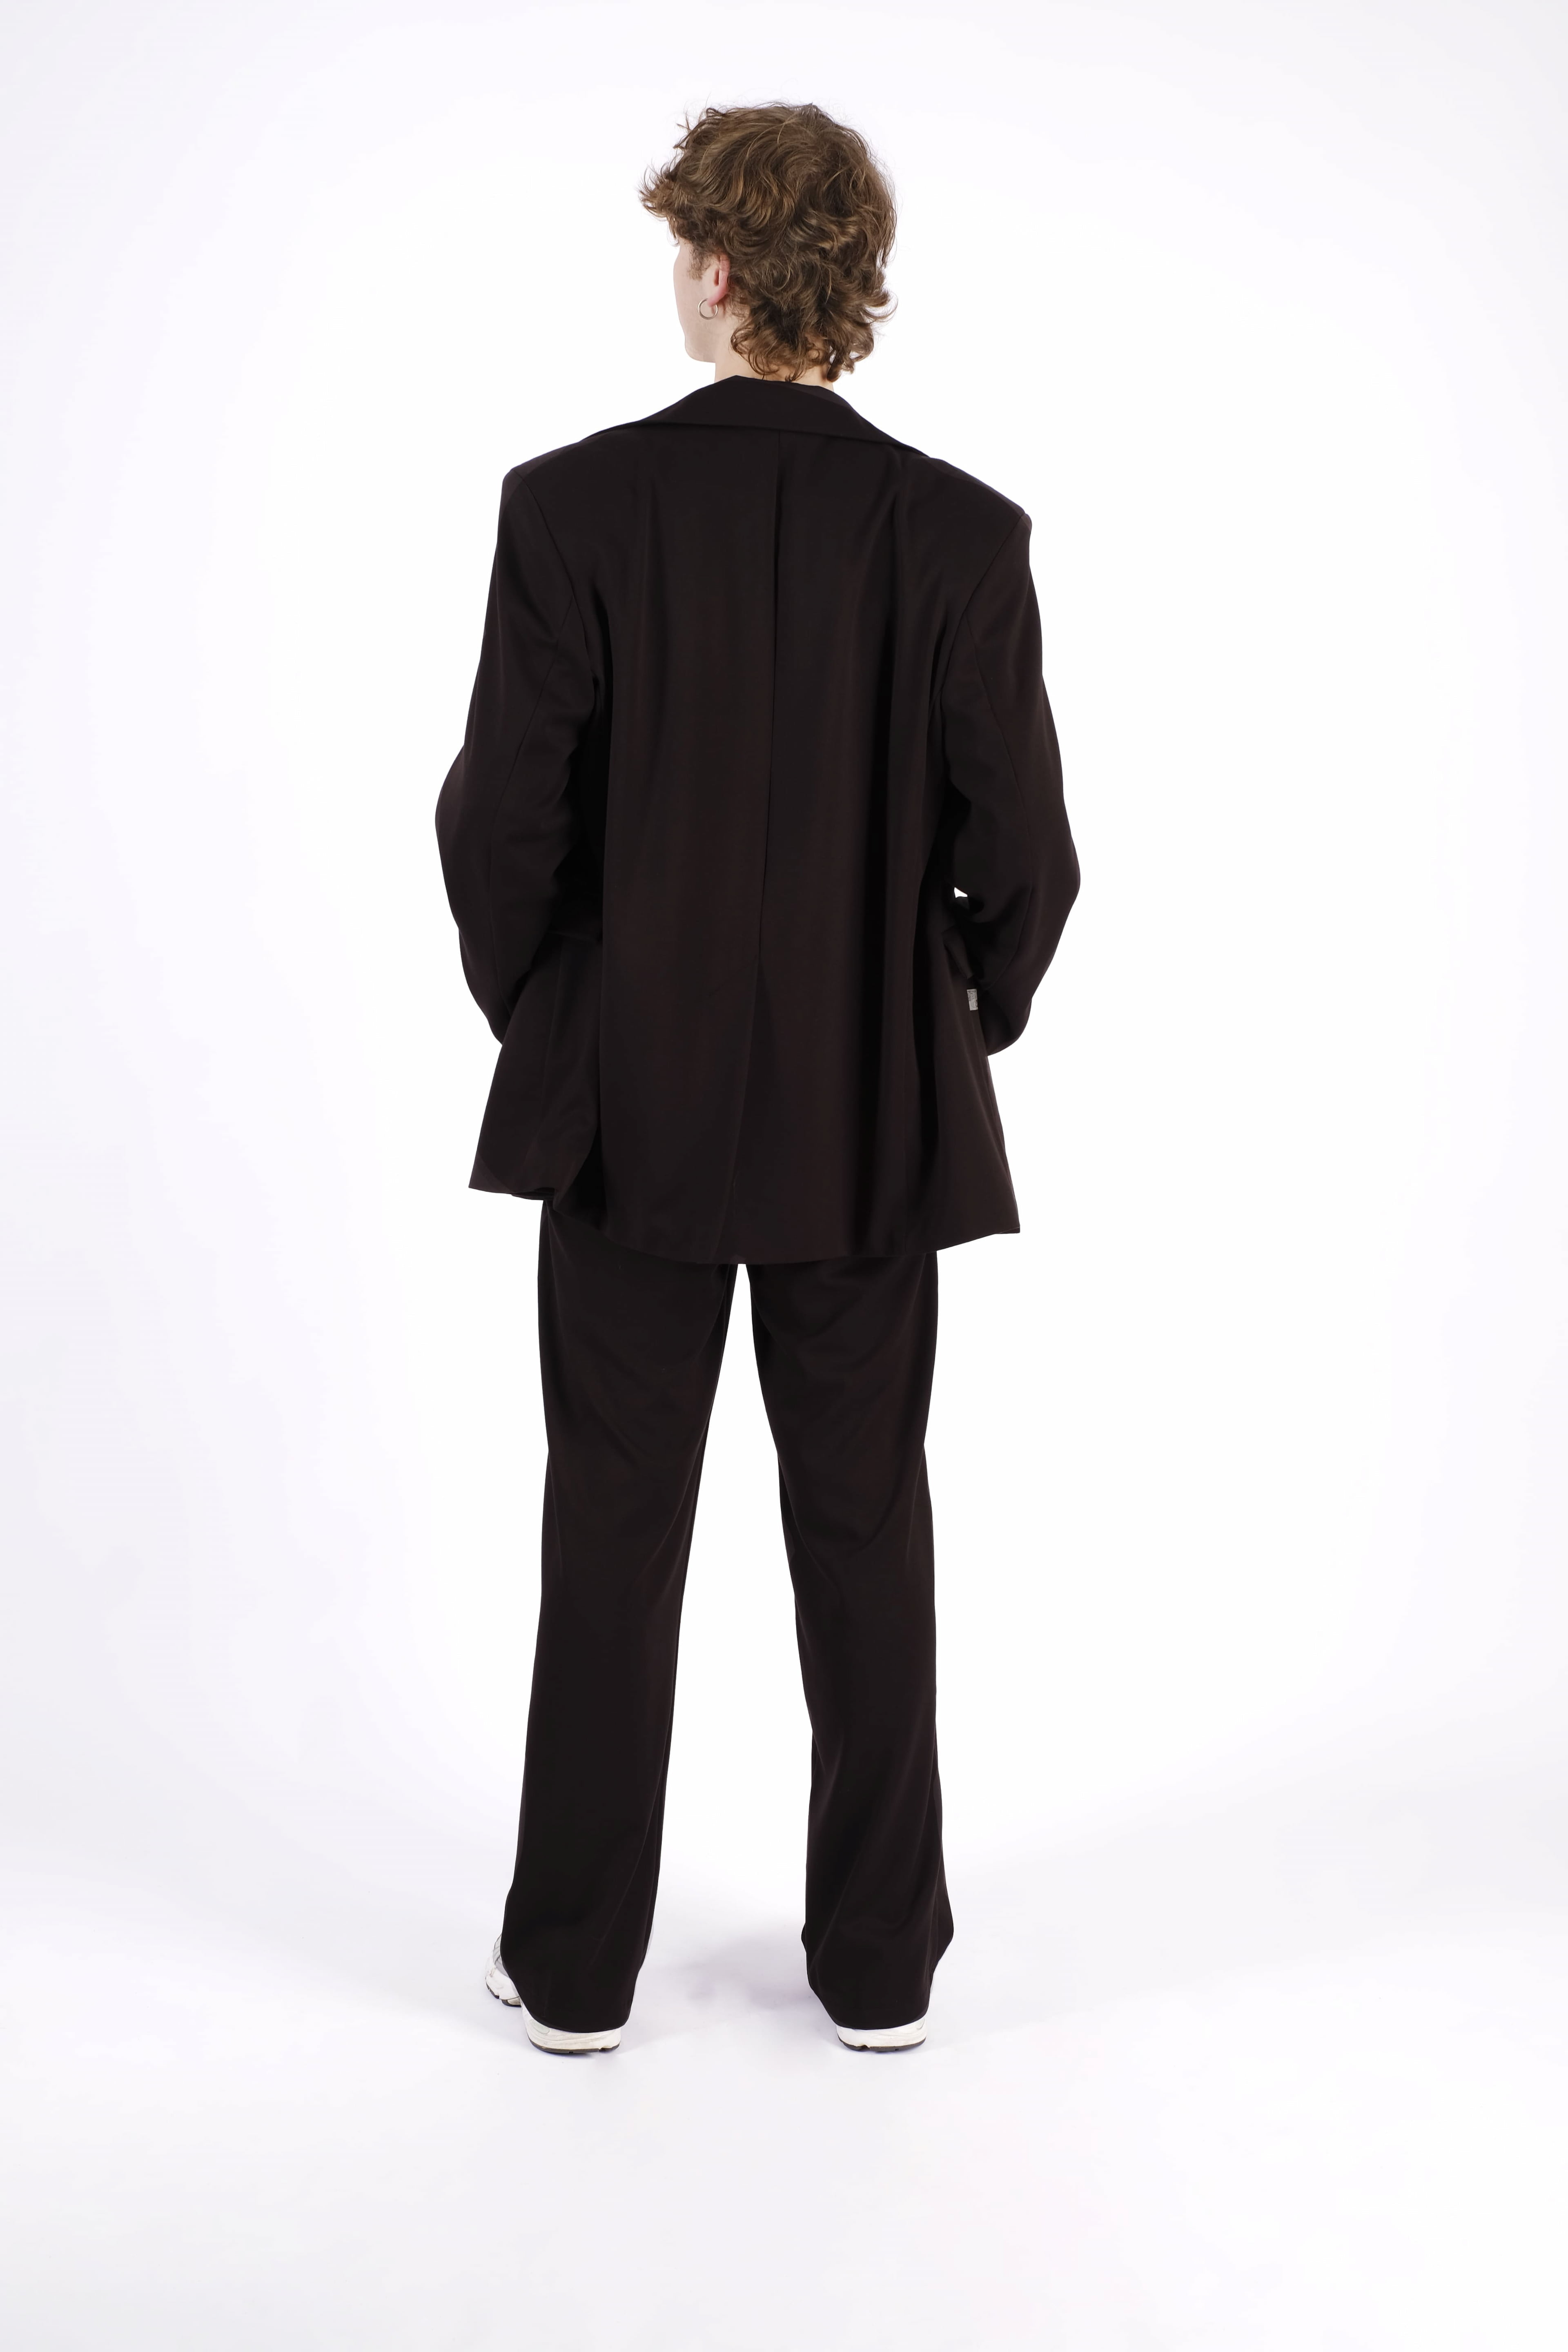 <p><br></p><p><br></p><p>Черный брючный костюм – символ элегантности и стиля. Идеально сидящий крой, высококачественный материал и безупречная отделка делают его незаменимым элементом гардероба для важных мероприятий или деловых встреч.</p>